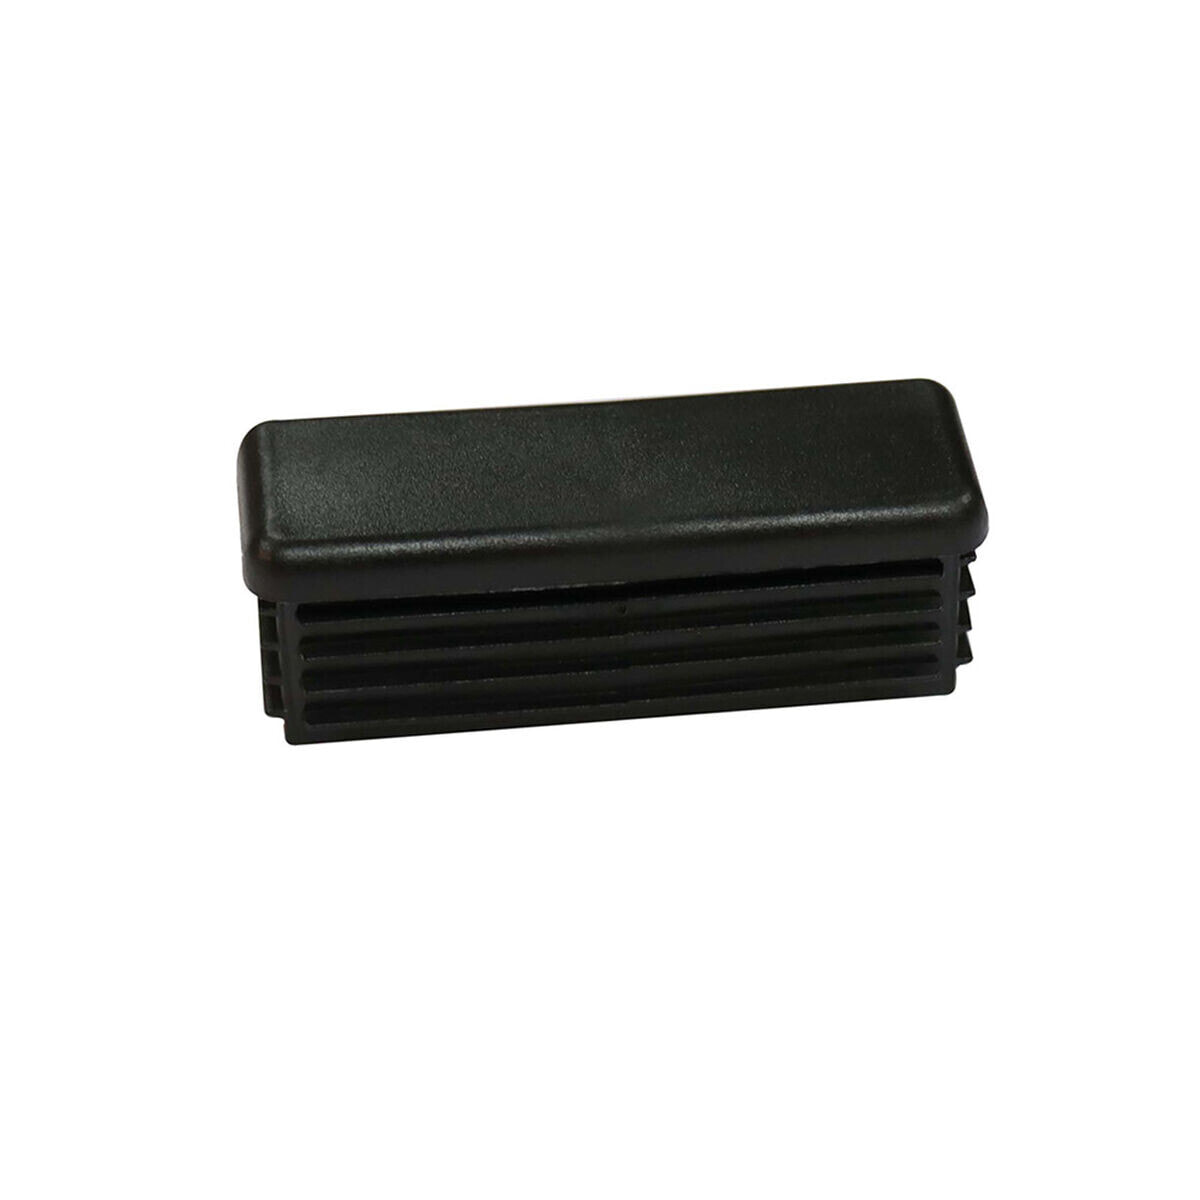 Терминальный штекер EDM 75093 лестница 64 x 25 mm Чёрный полиэтилен (2 штук)